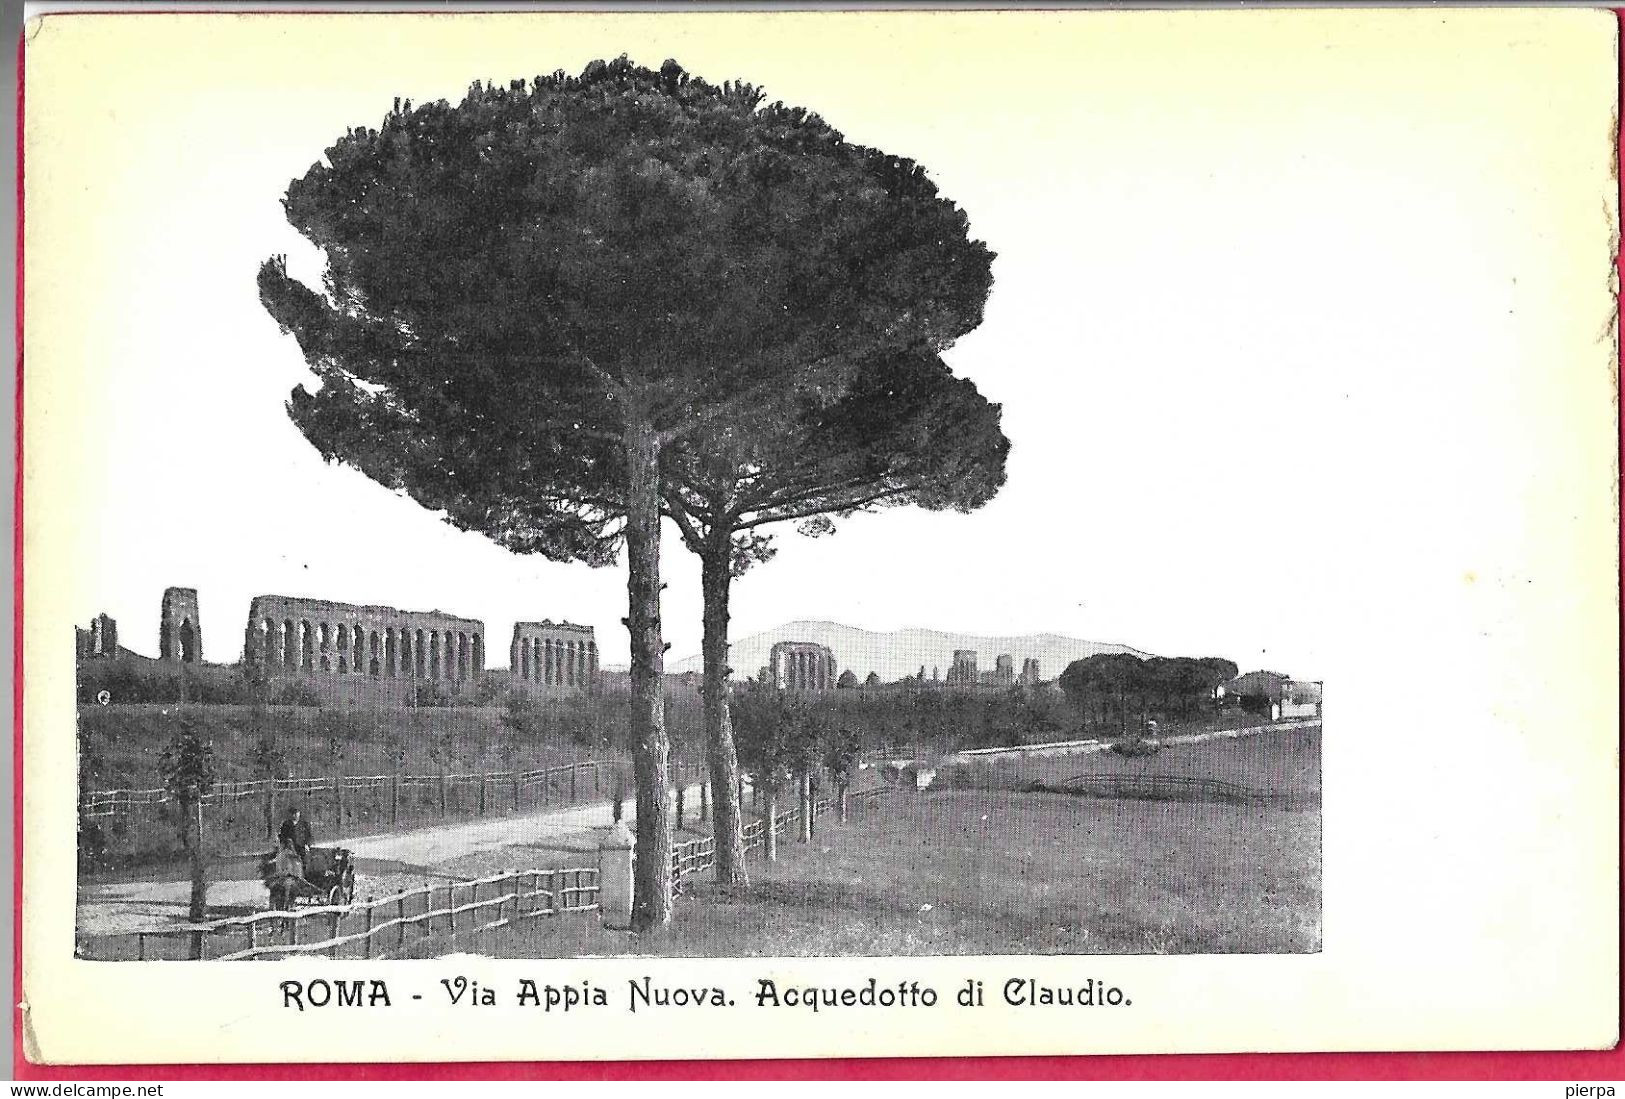 ROMA - VIA APPIA NUOVA - FORMATO PICCOLO - EDIZ. ORIGINALE ANNI 30 - NUOVA - Viste Panoramiche, Panorama